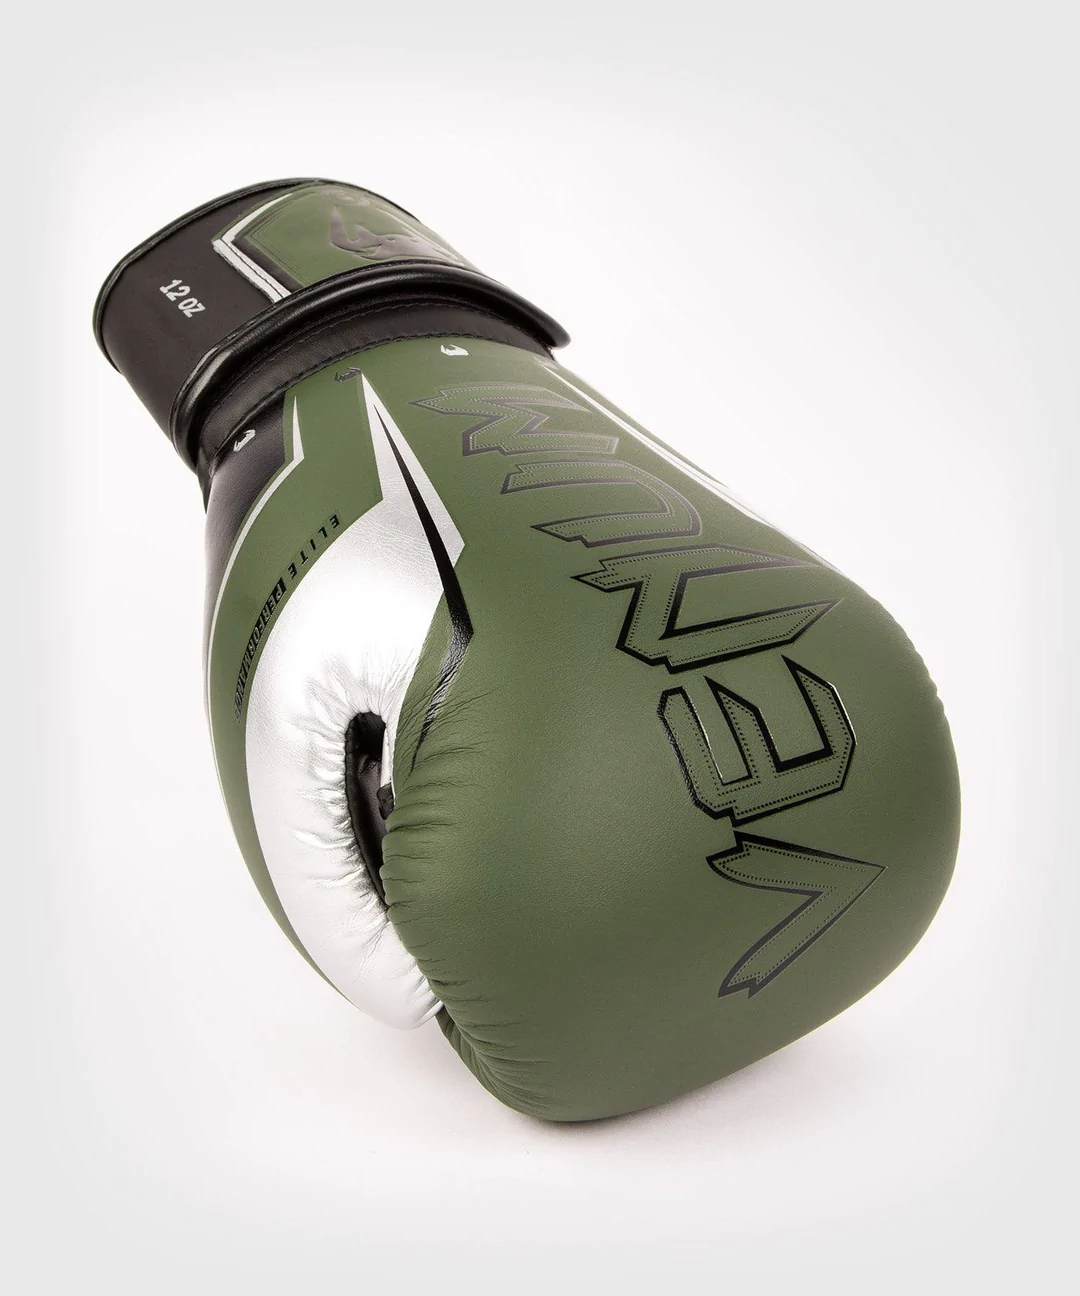 Venum Elite Evo Hook And Loop Boxing Gloves - 12 Oz. - Black